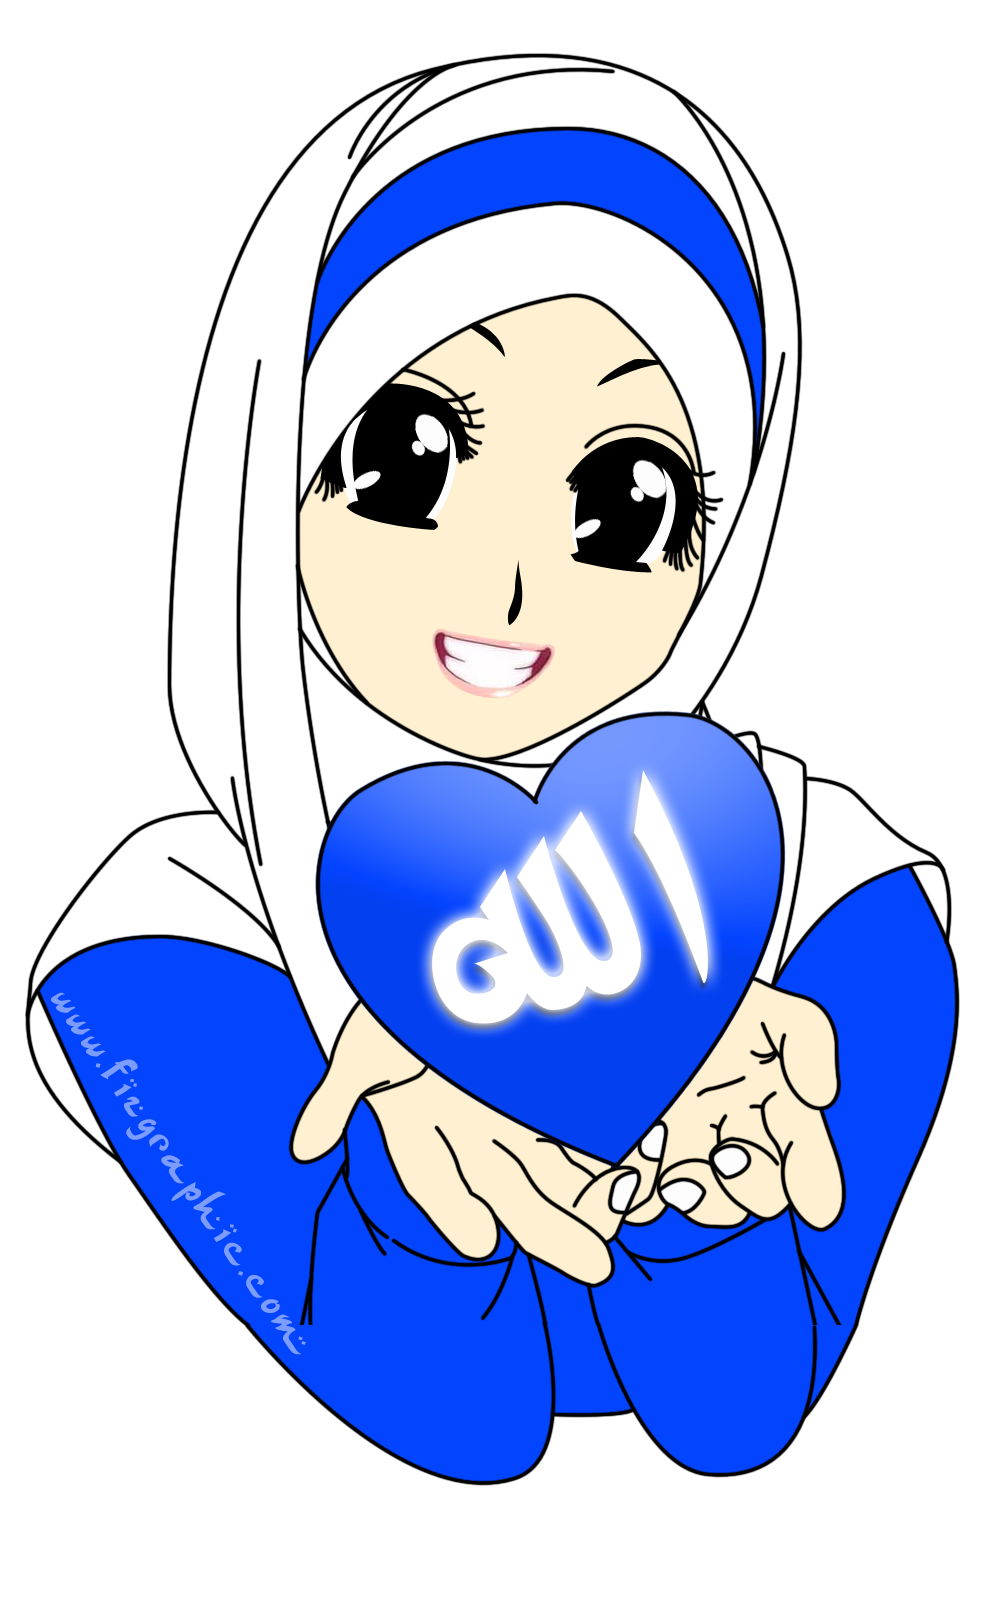 Kartun Muslimah Warna Biru Gambar Kartun